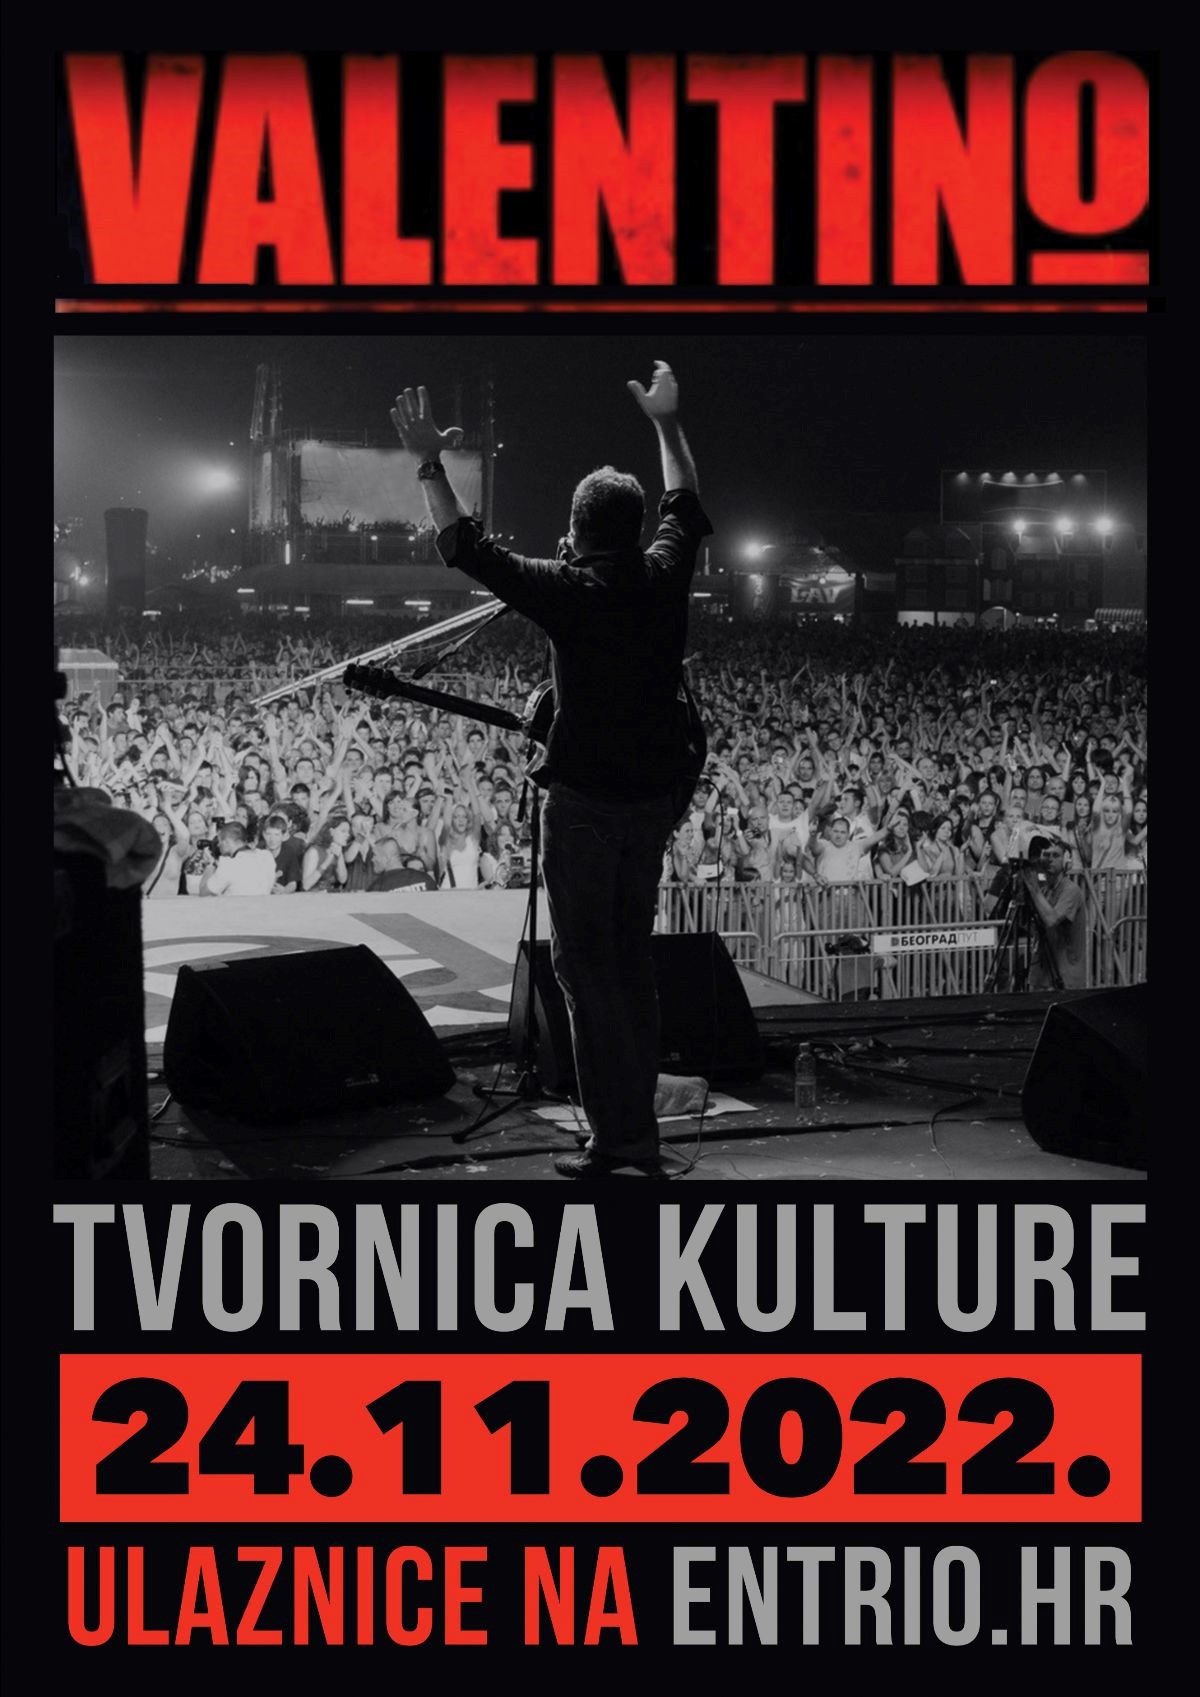 Valentino, jedna od najpopularnijih pop-rock grupa ovih prostora 80-ih, ponovno u Zagrebu!